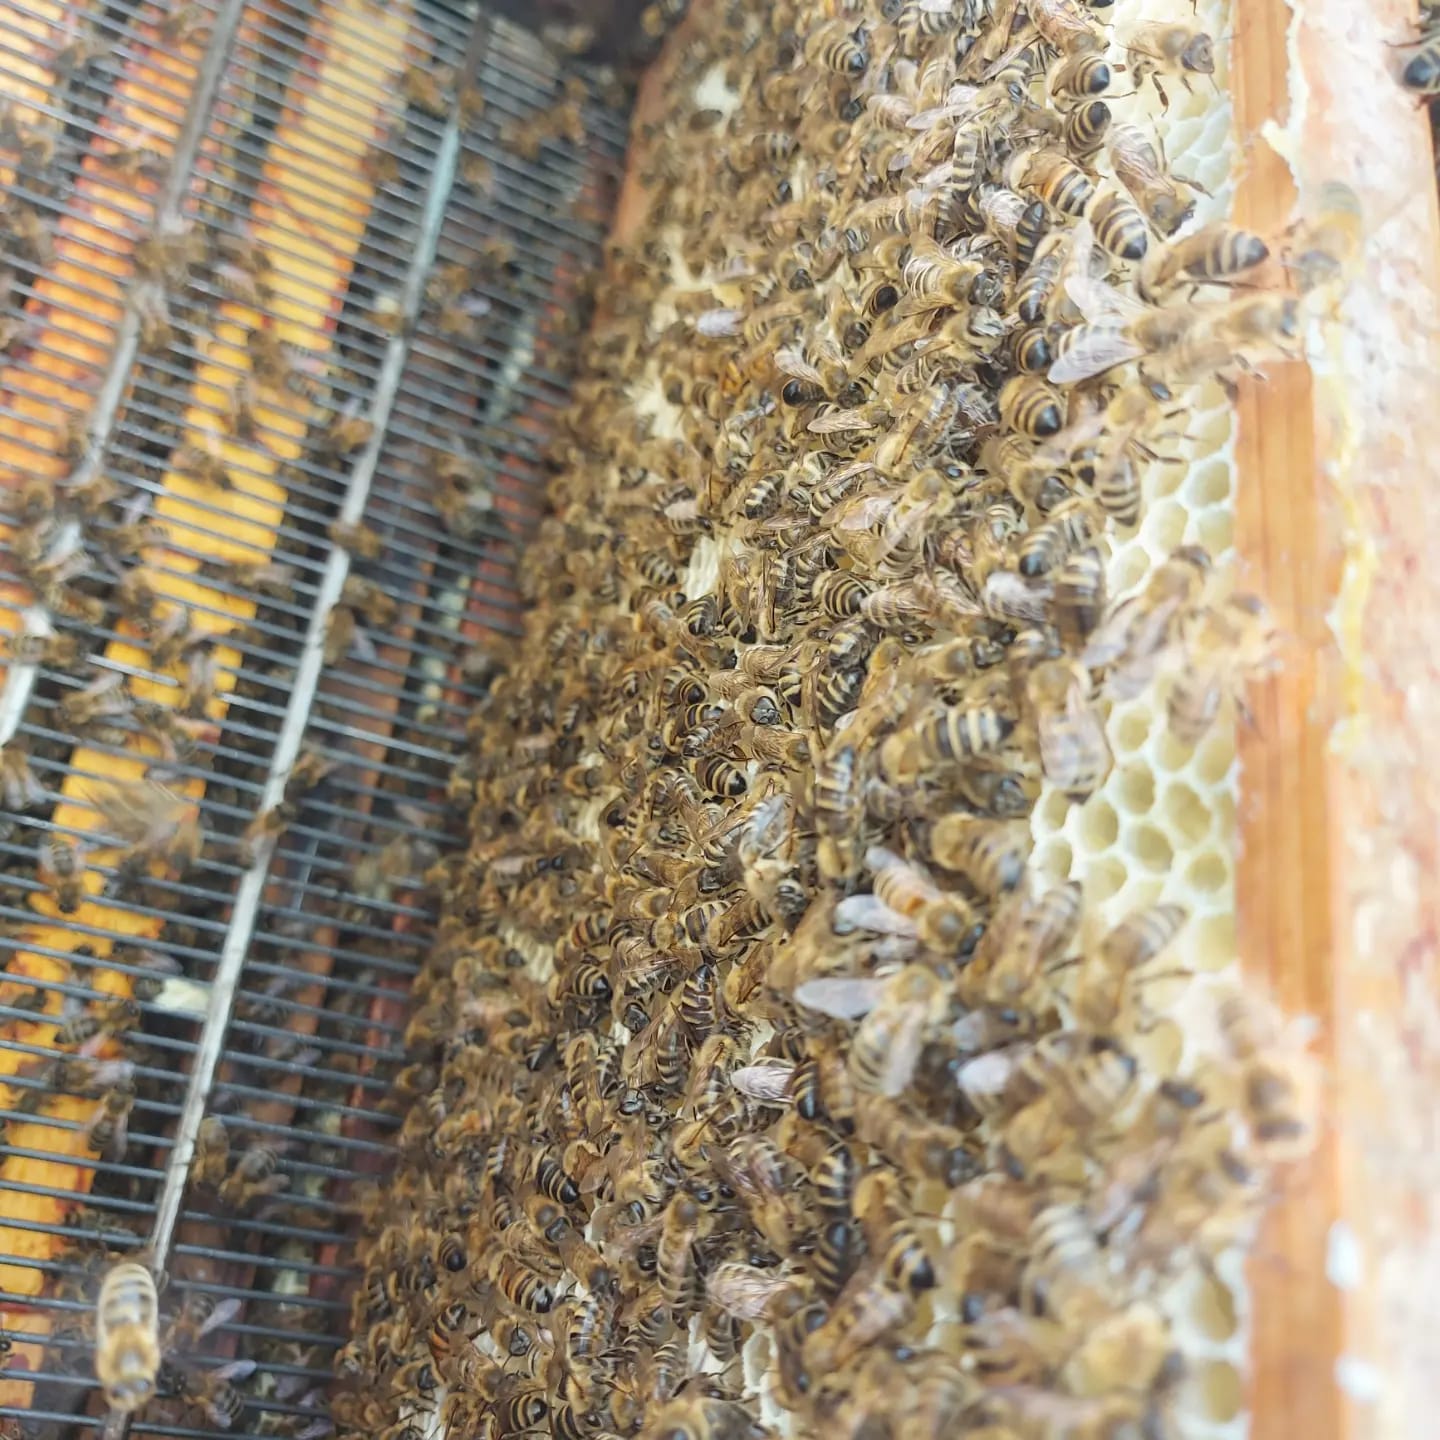 Tierpatenschaft Honigbienen